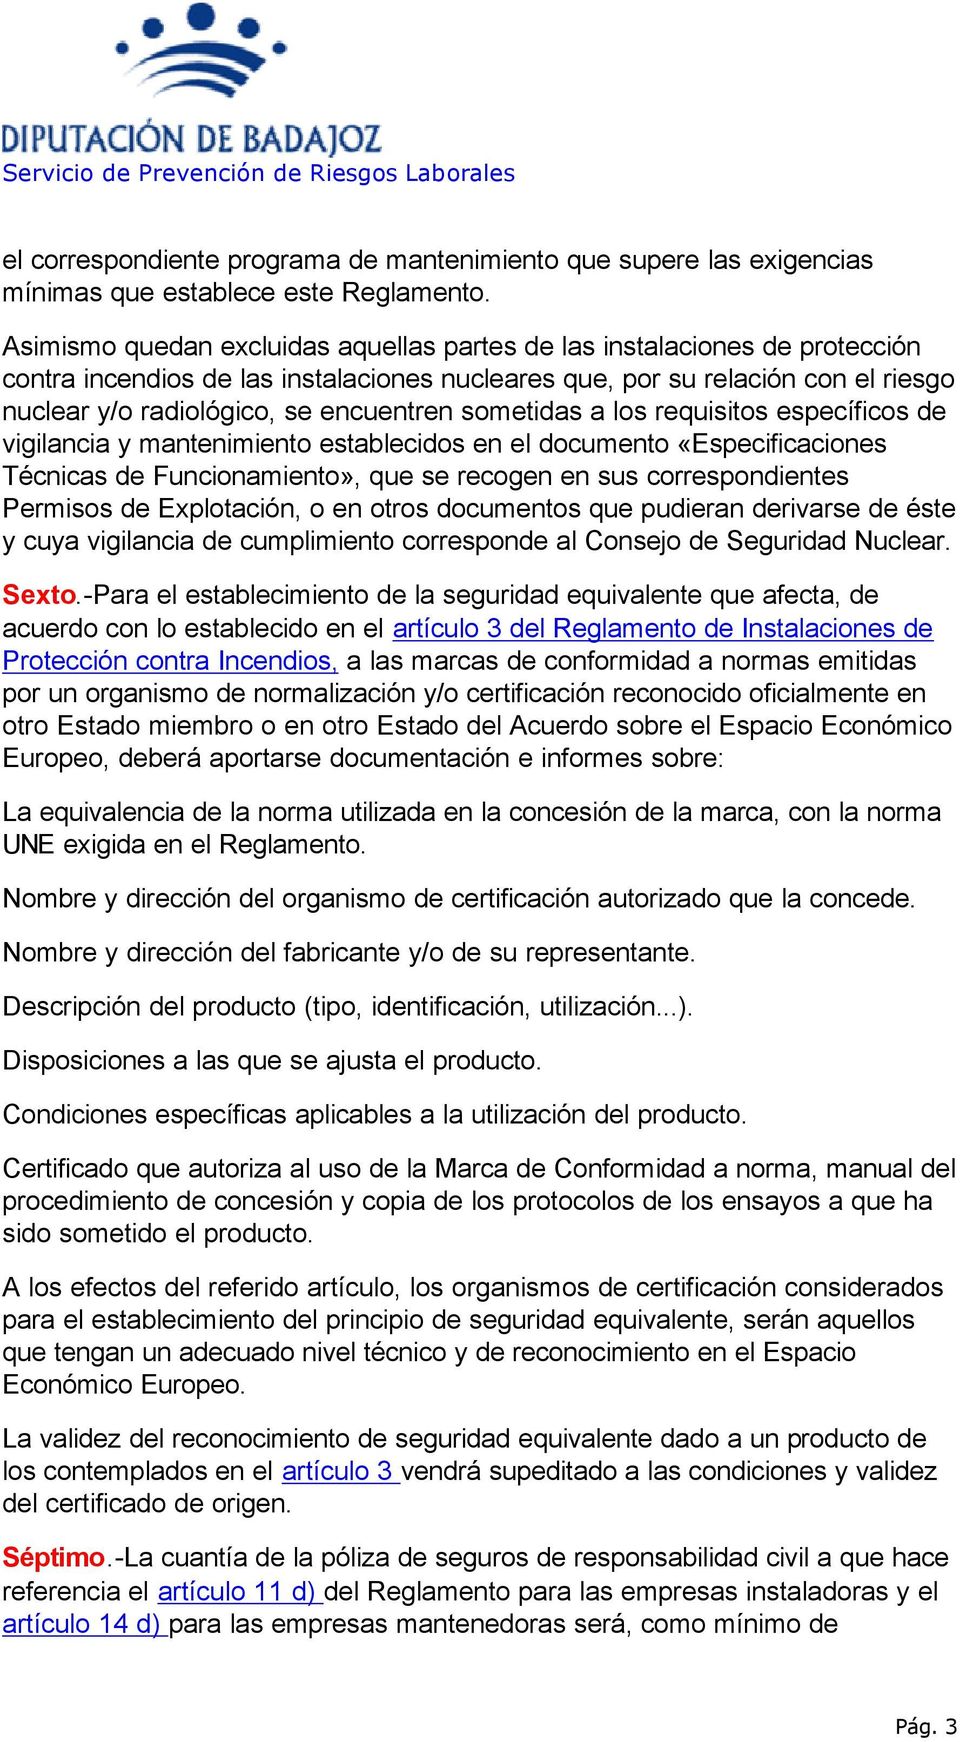 sometidas a los requisitos específicos de vigilancia y mantenimiento establecidos en el documento «Especificaciones Técnicas de Funcionamiento», que se recogen en sus correspondientes Permisos de